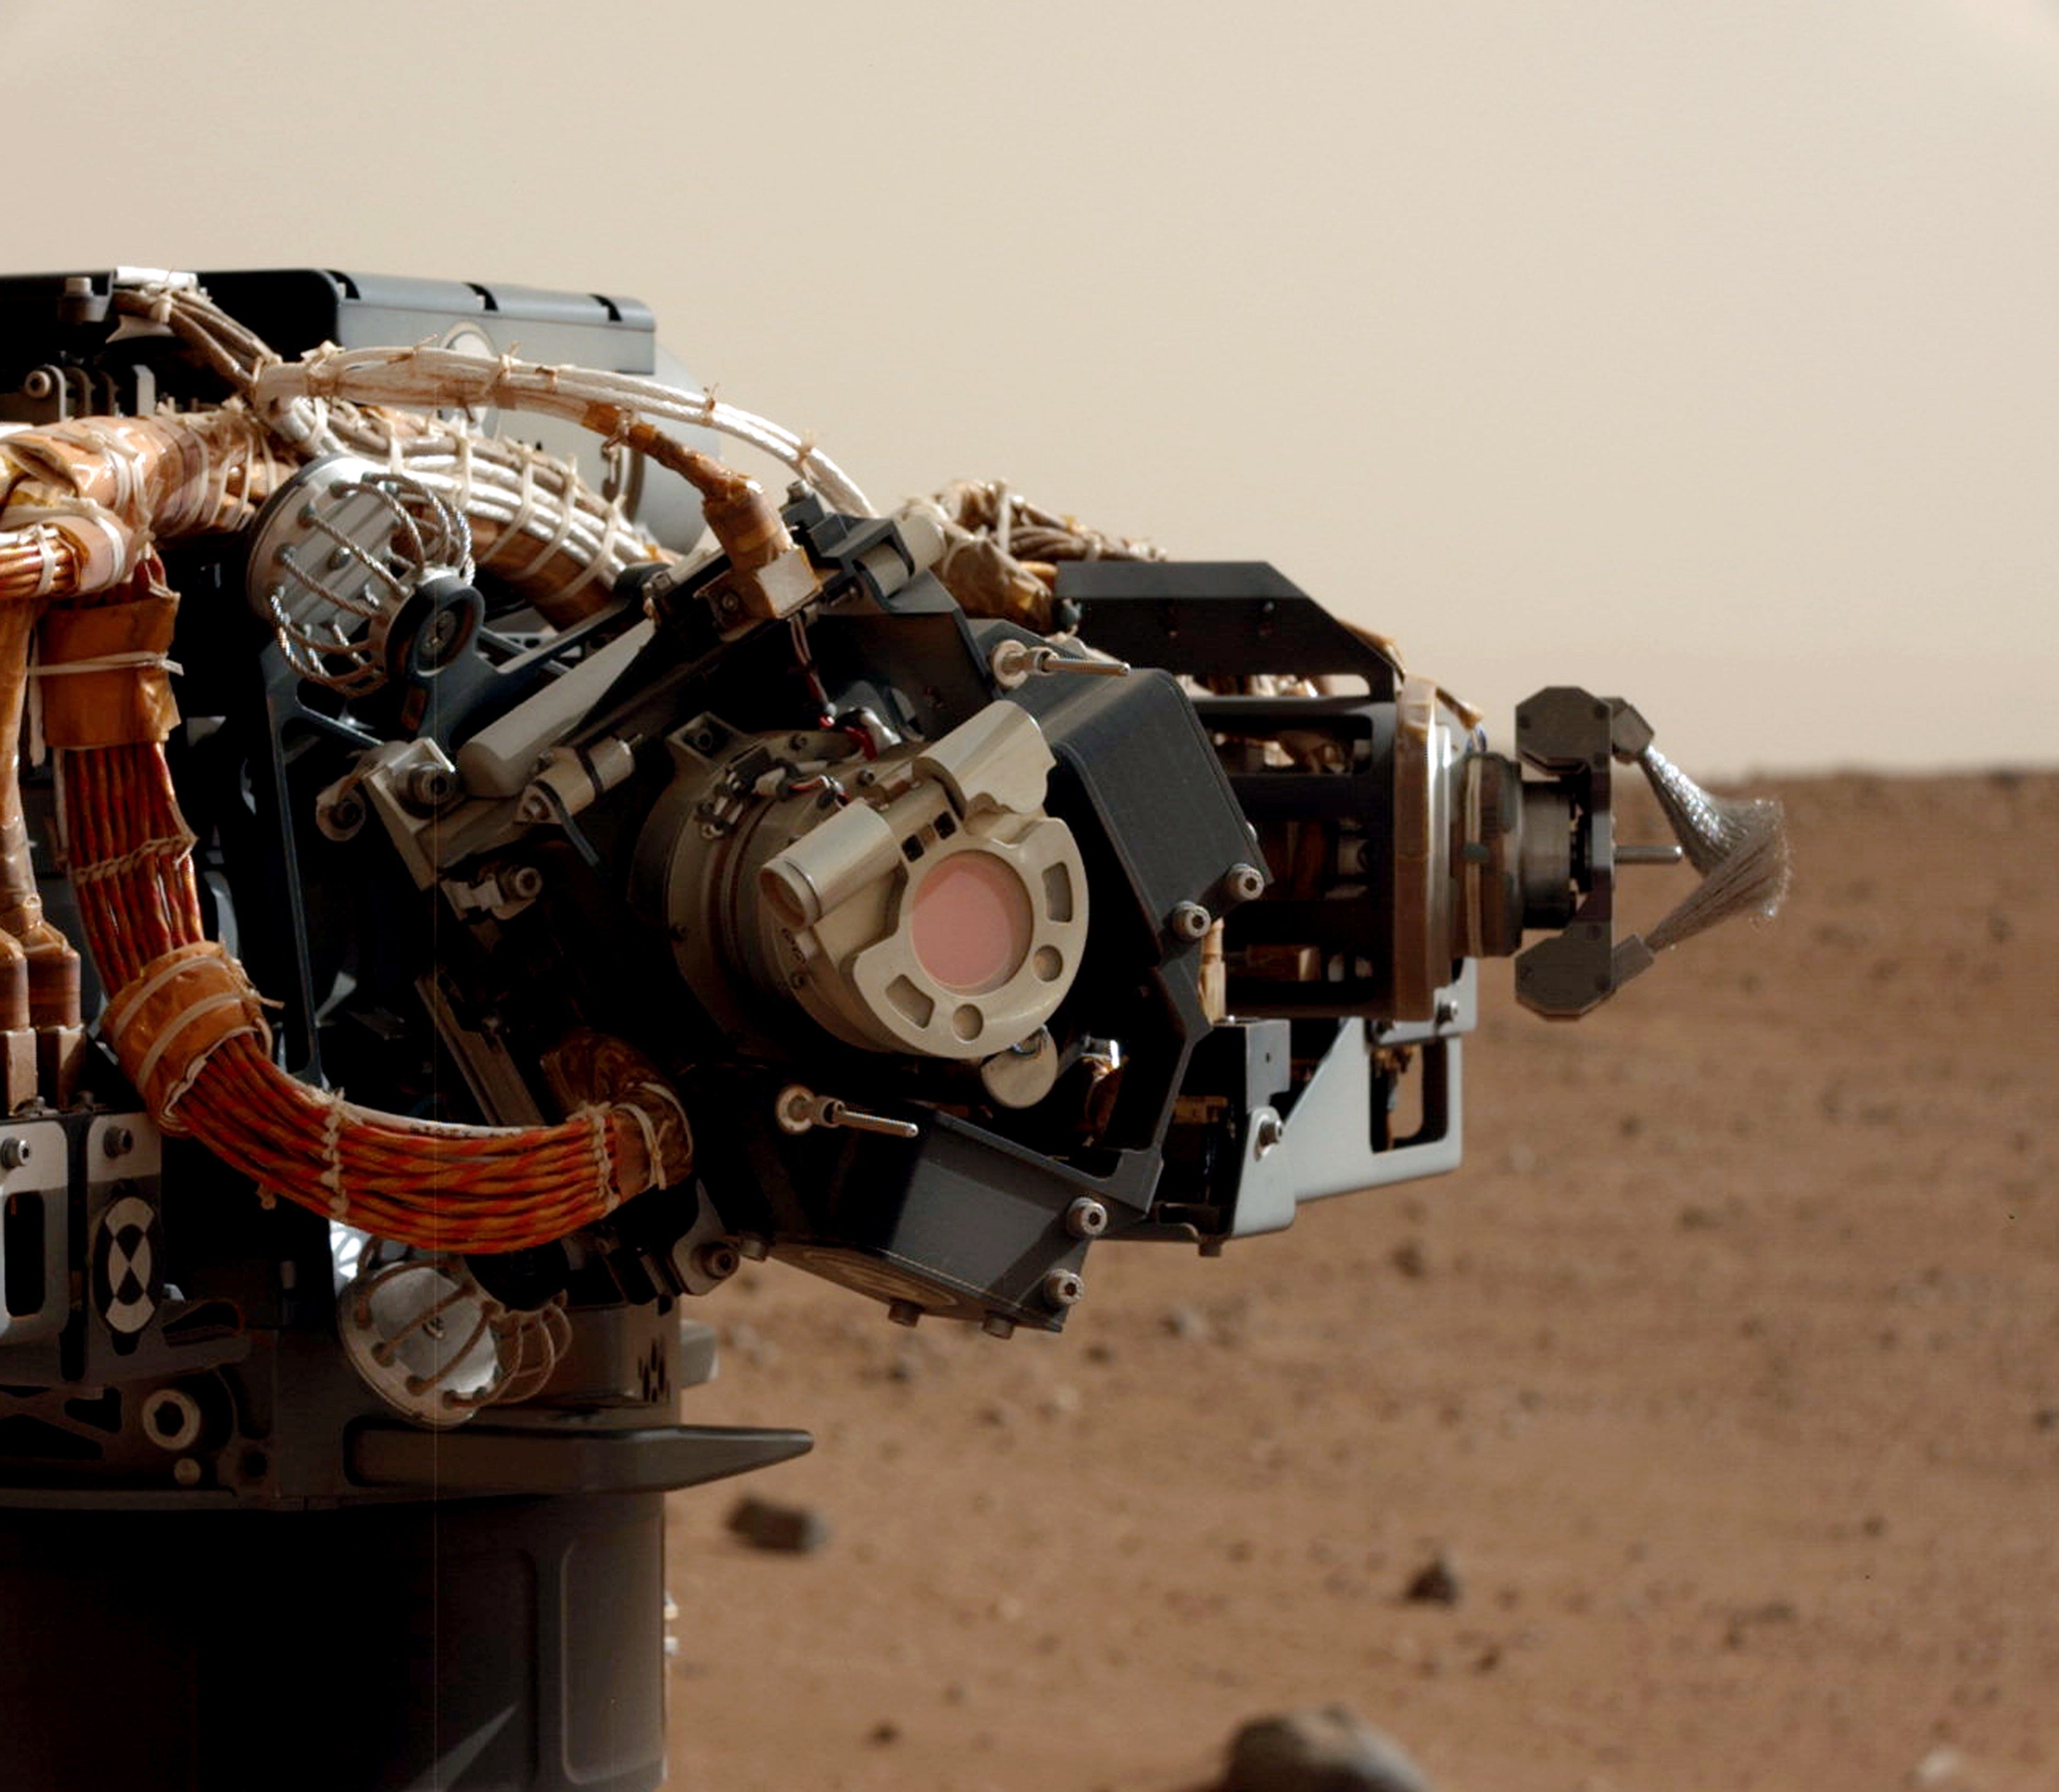 The Mast Cam on the Mars Curiosity rover